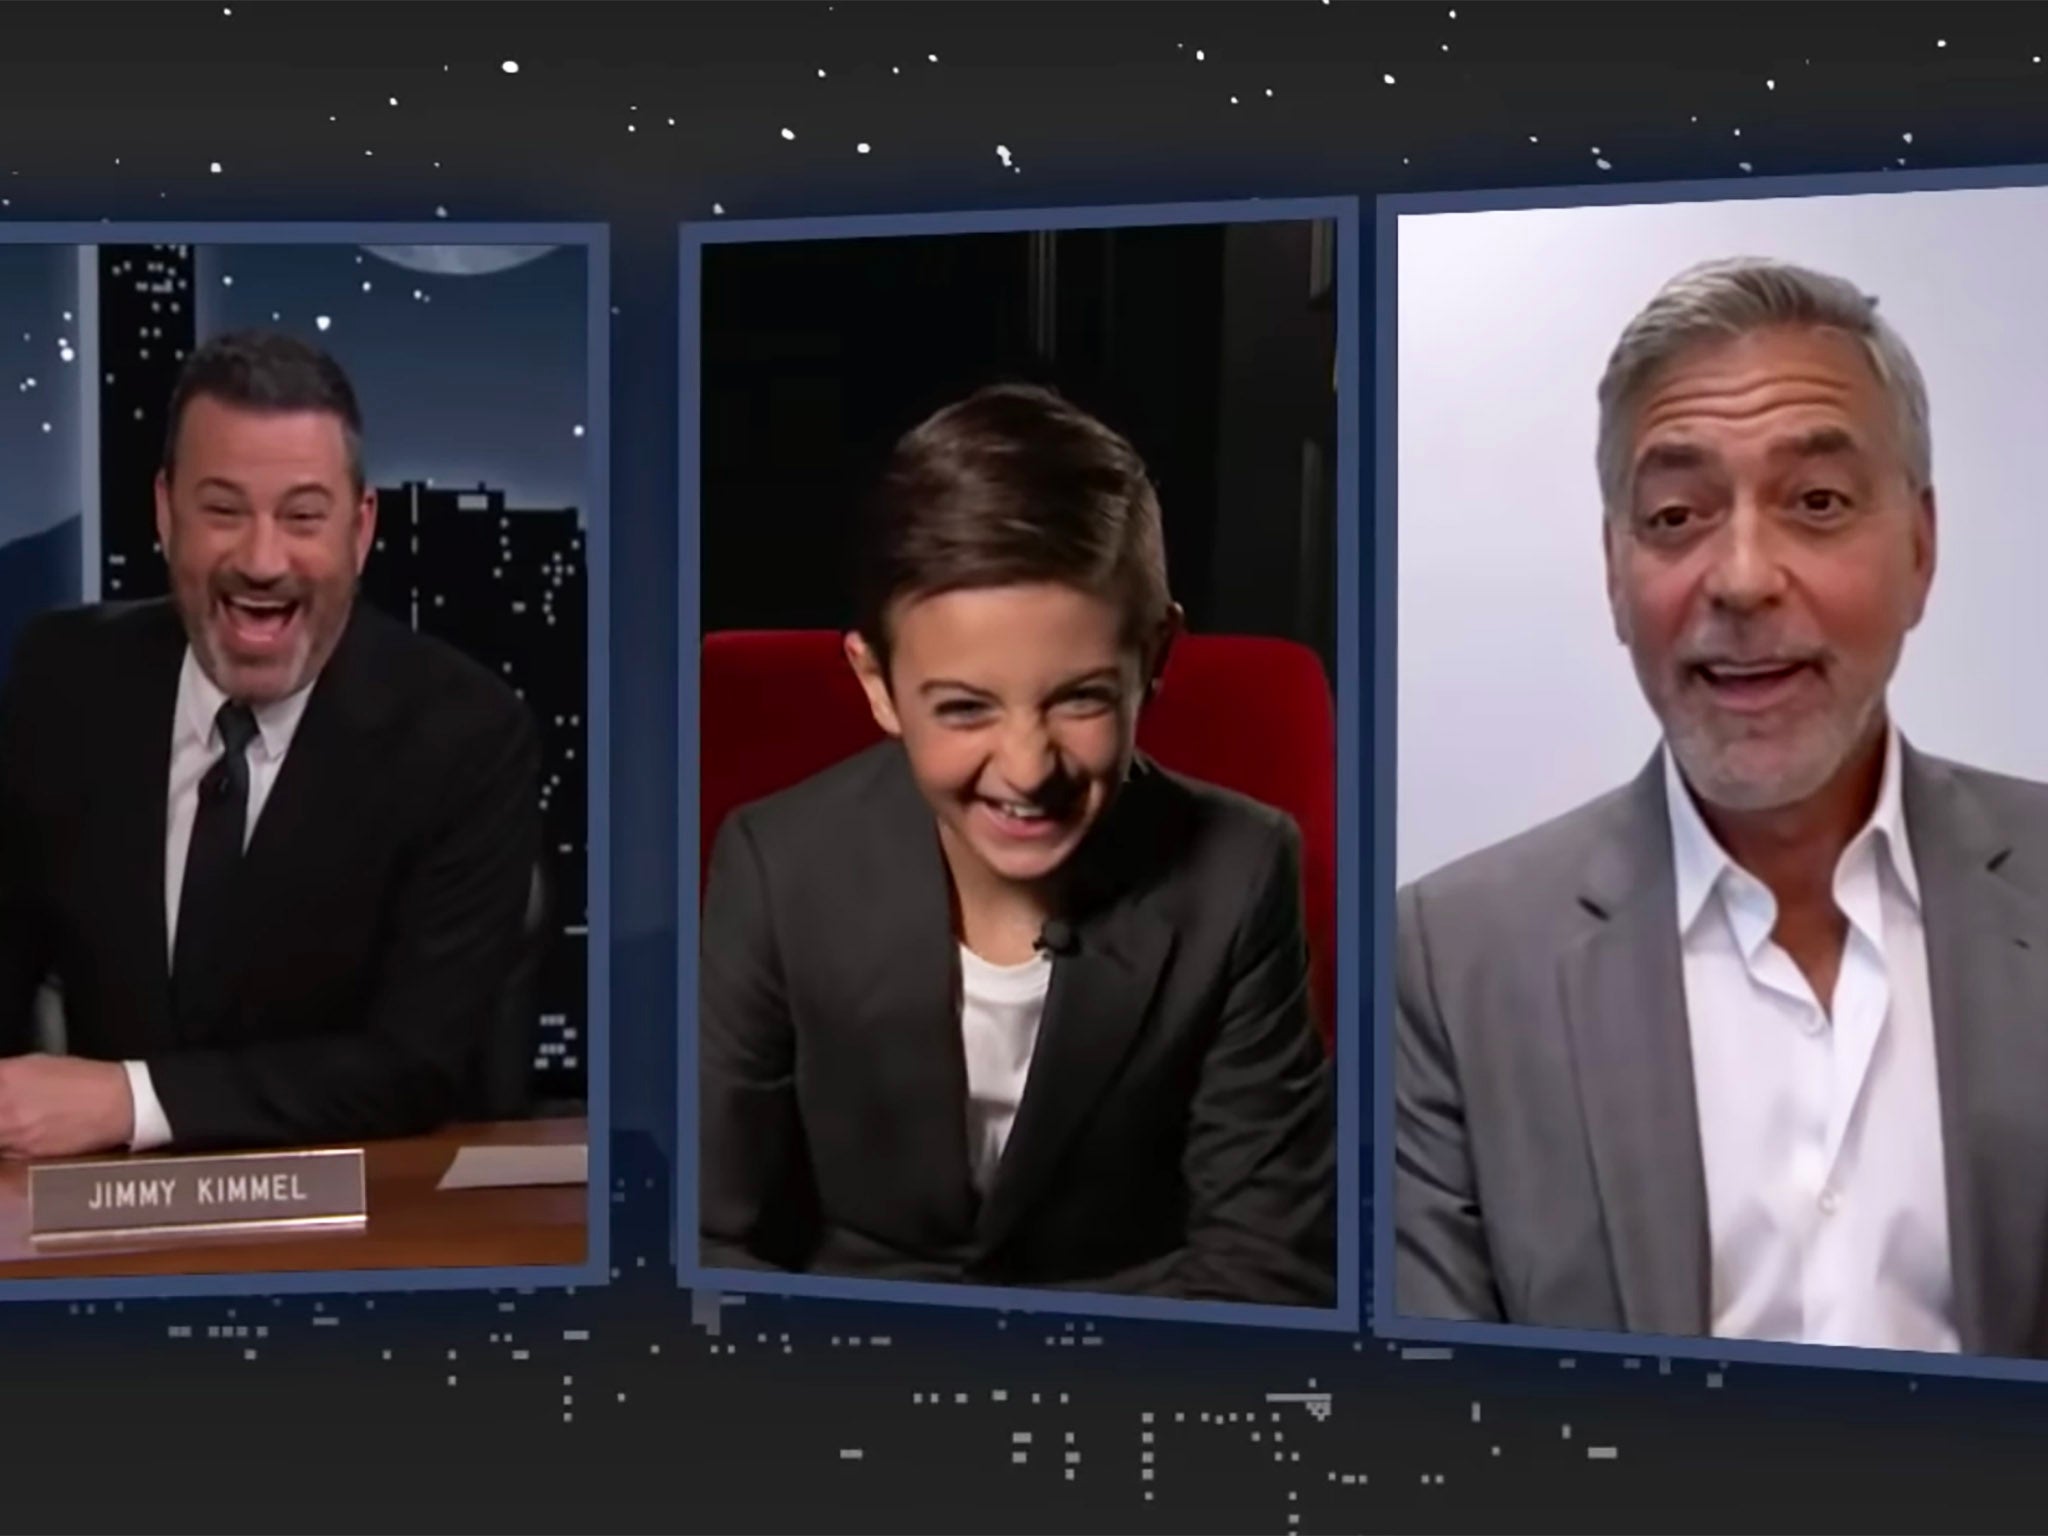 Jimmy Kimmel, Daniel Ranieri and George Clooney on Kimmel’s US talk show